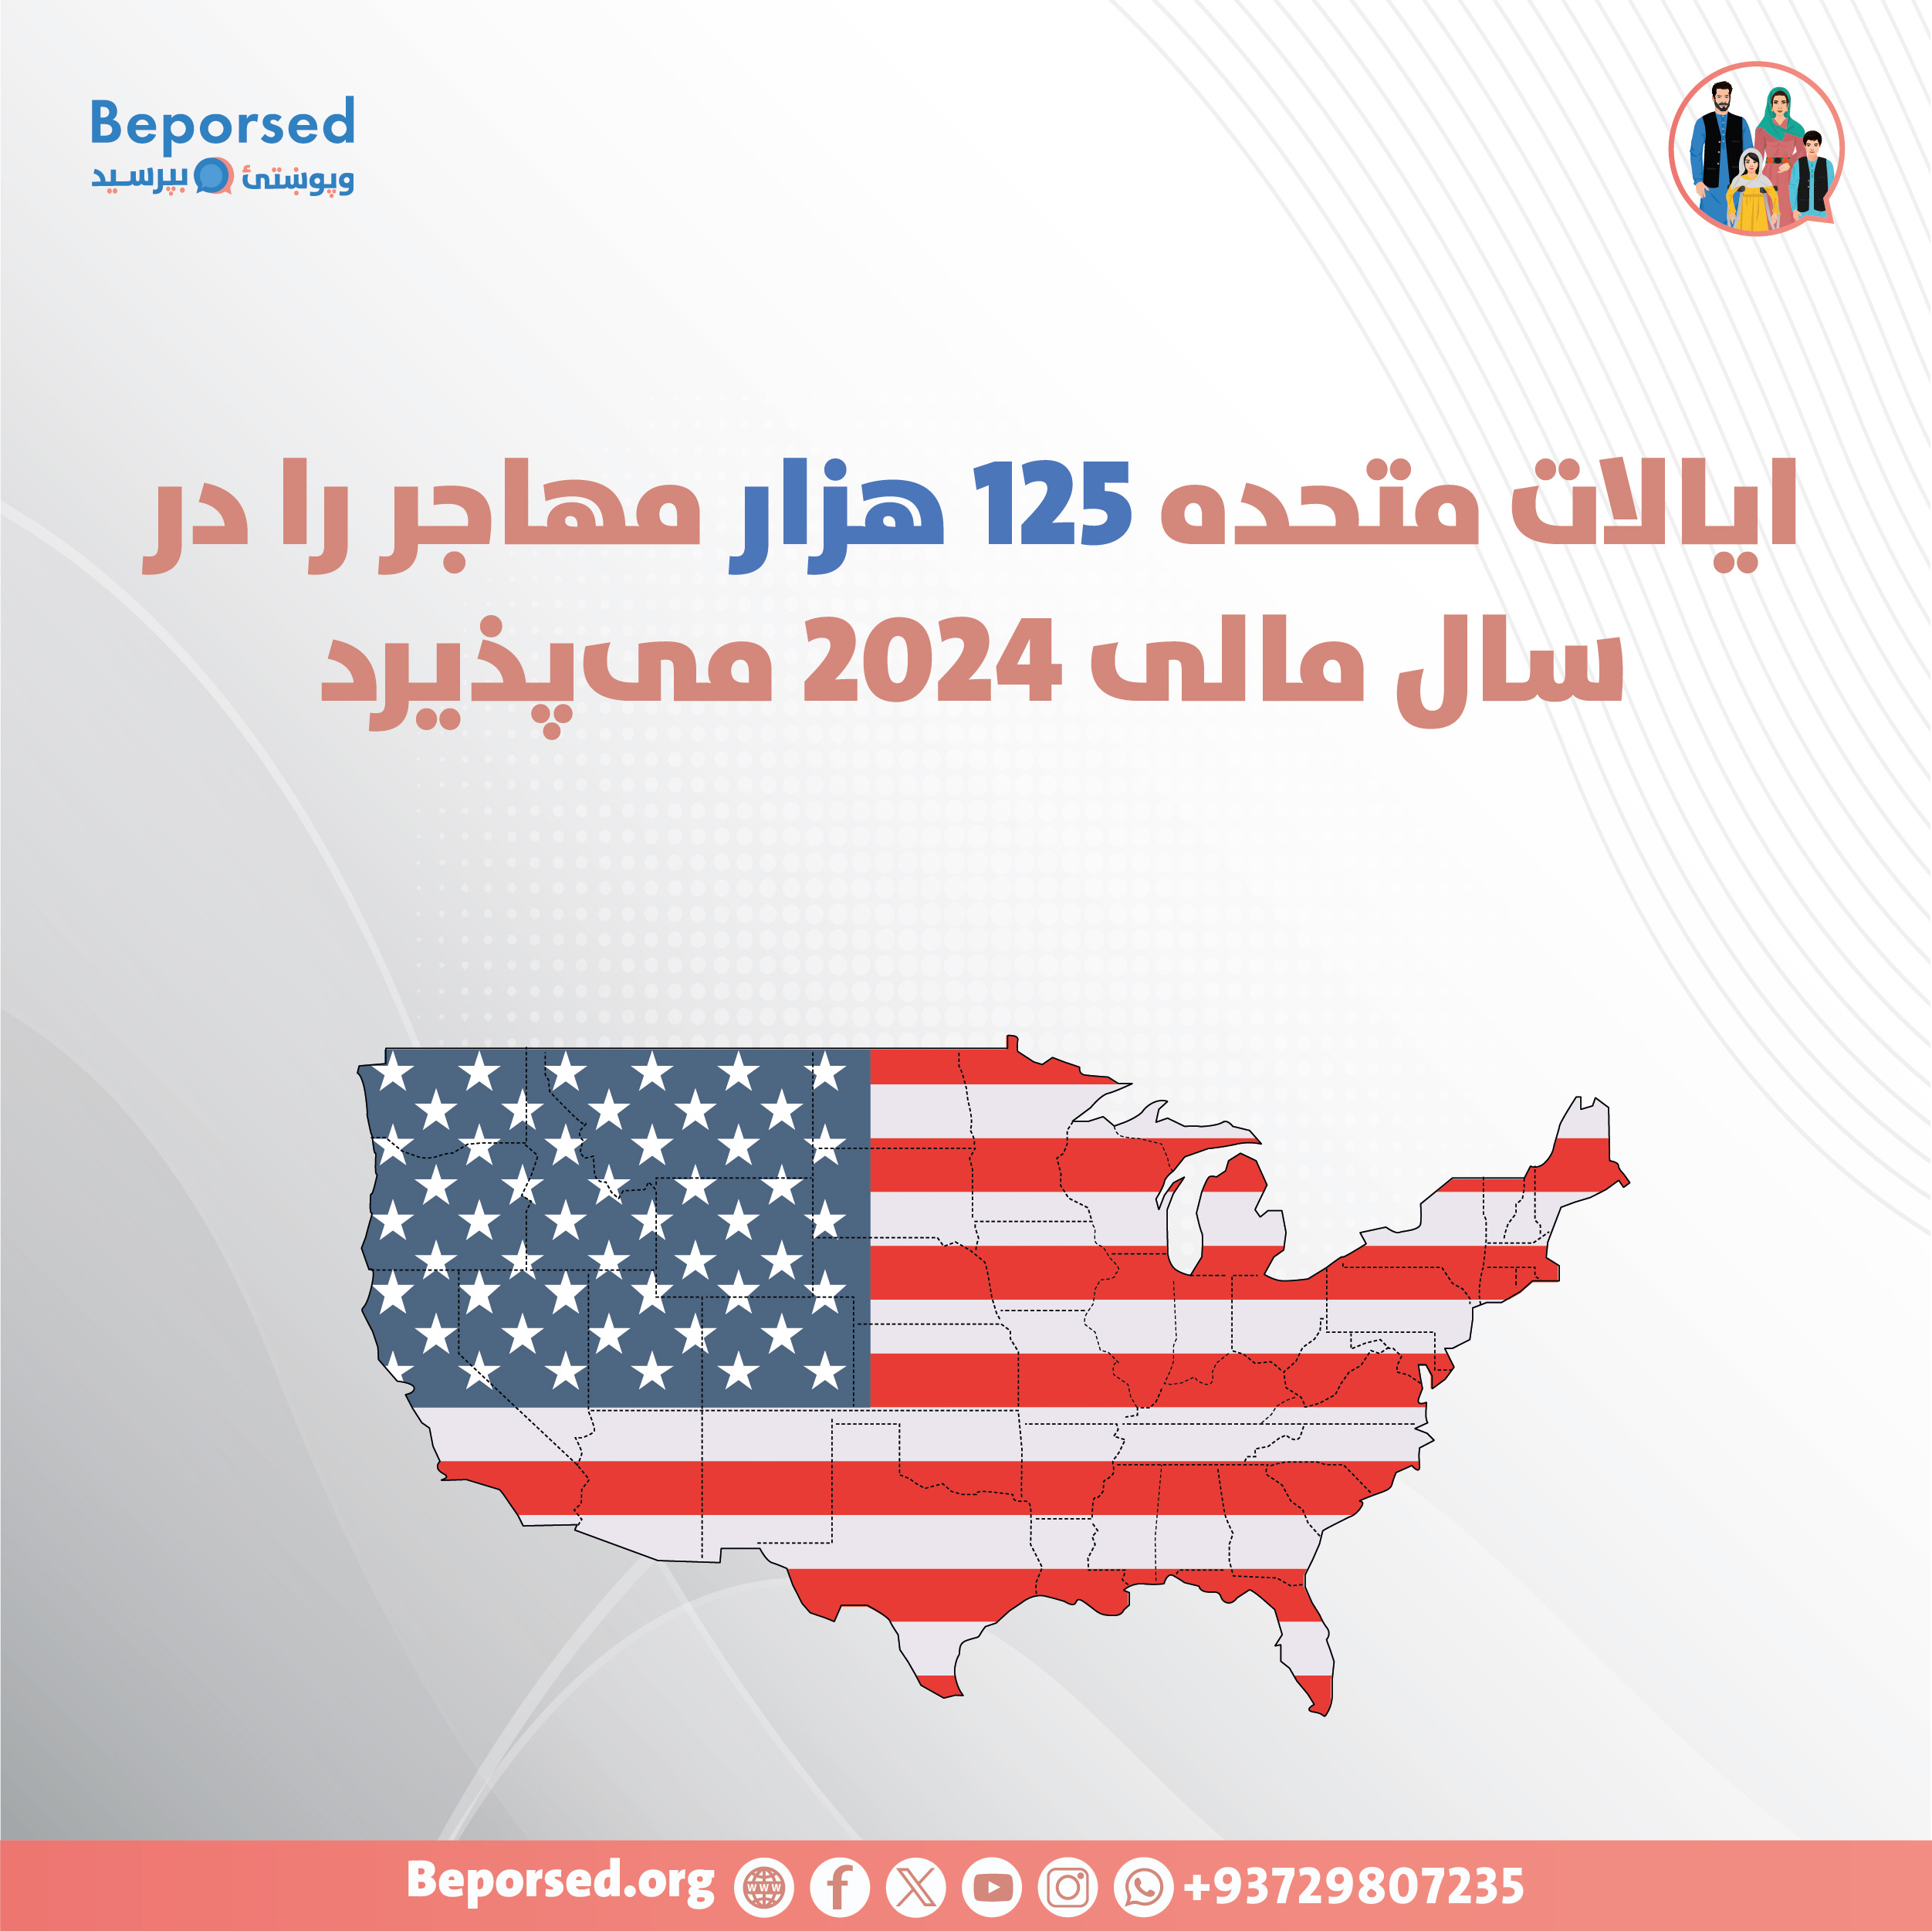 ایالات متحده 125 هزار مهاجر را در سال مالی 2024 می پذیرد-01.jpg